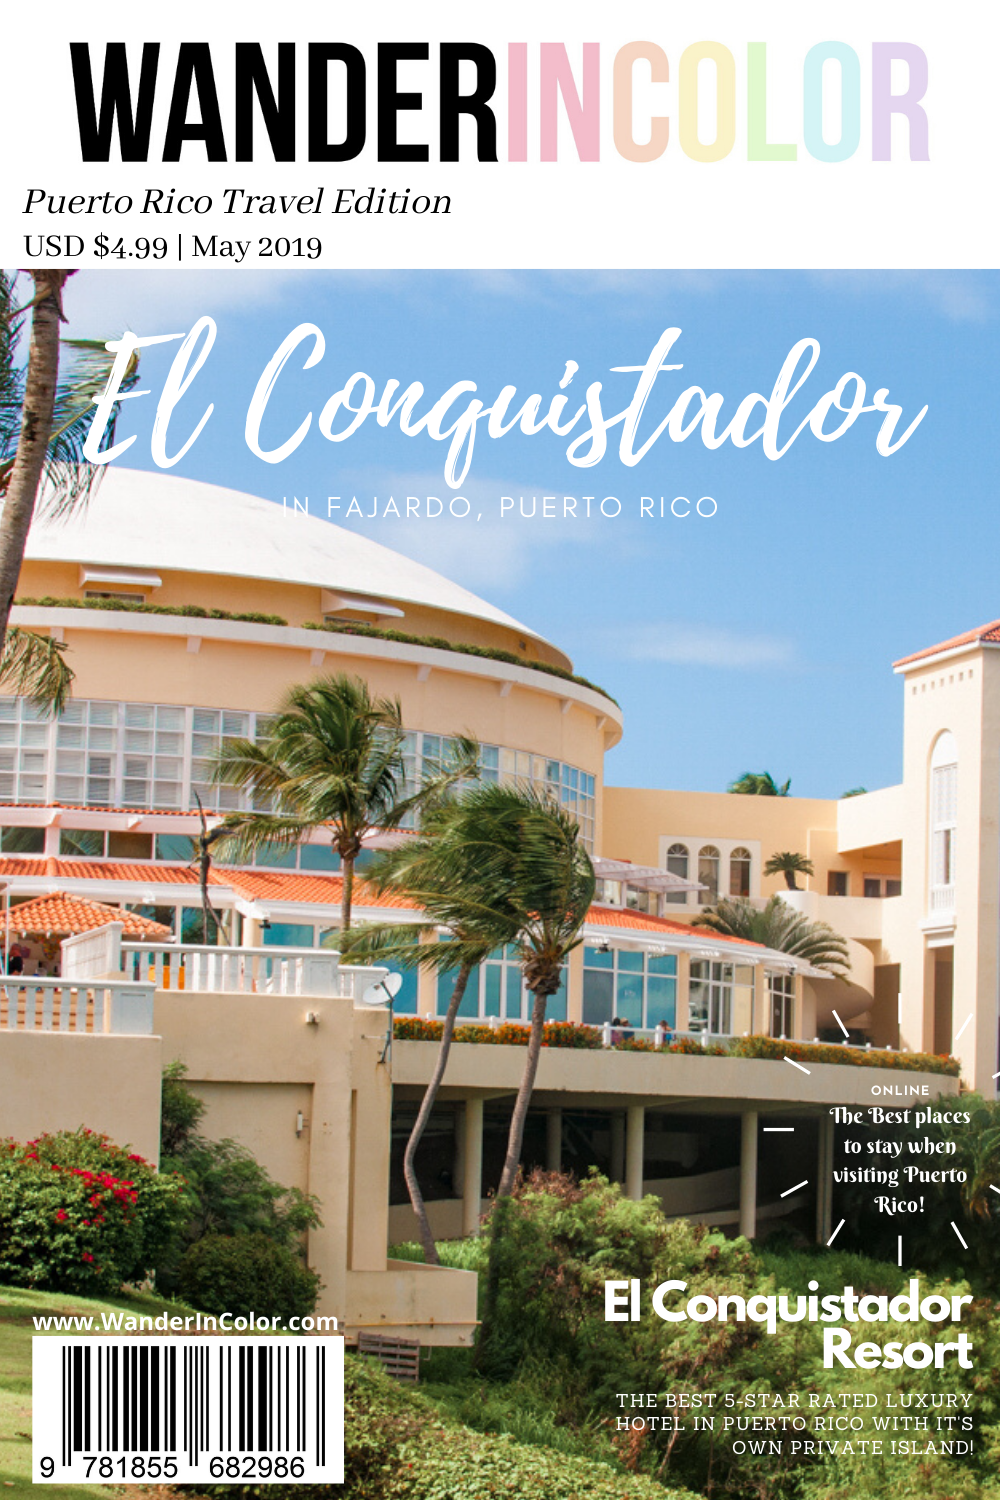 El Conquistador, puerto Rico, 5 star resorts in puerto rico, luxury hotels in puerto rico, waldorf astoria hotels